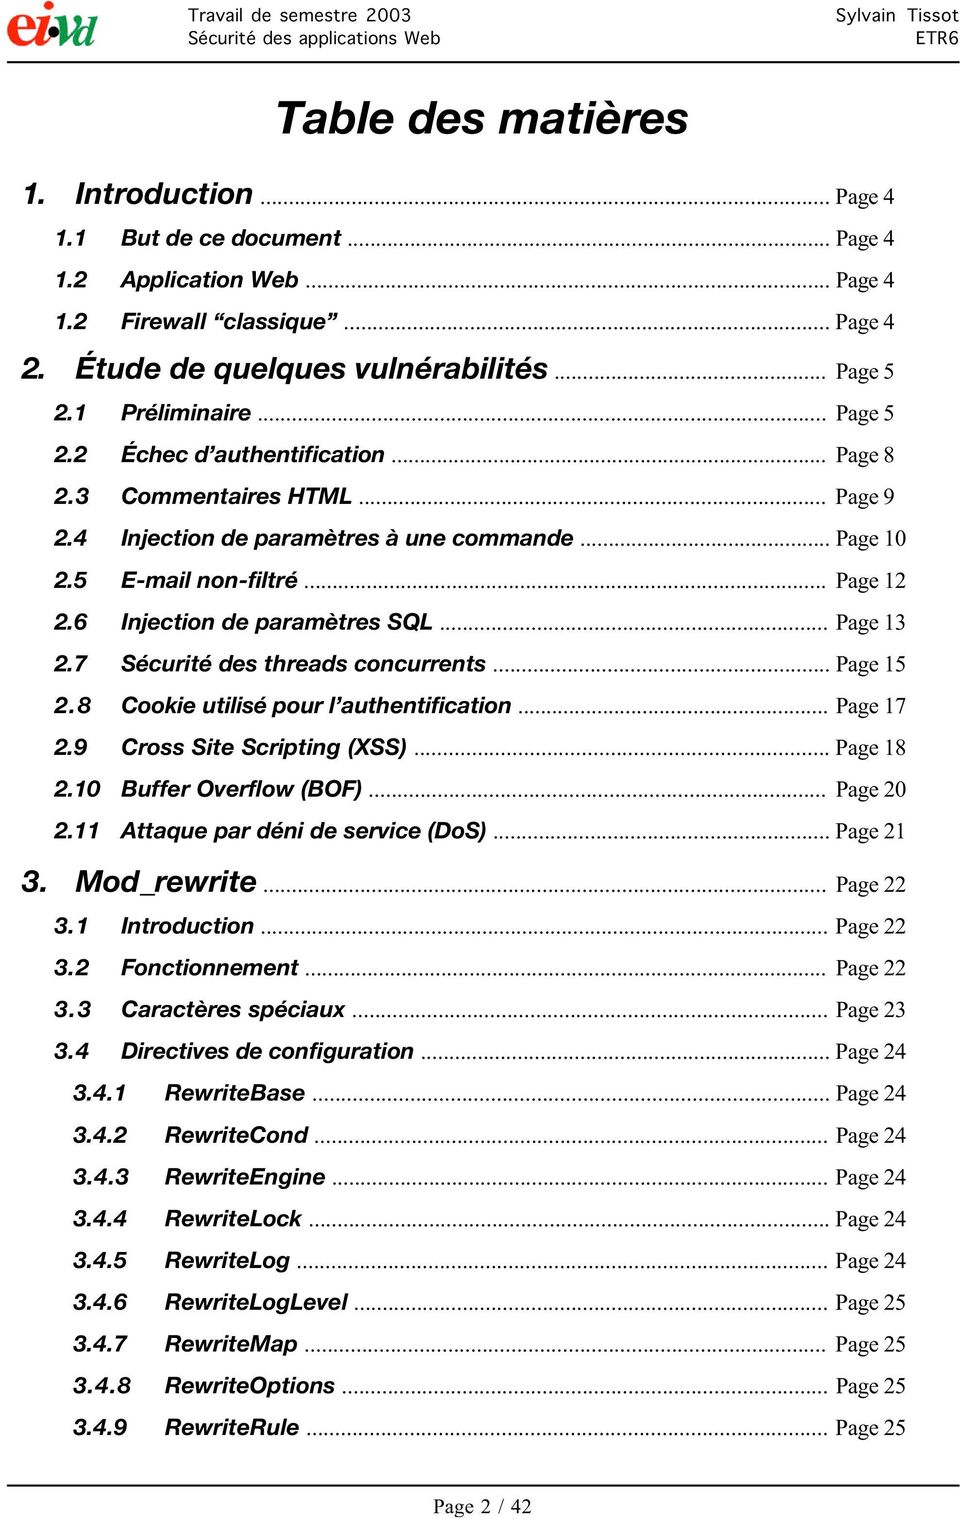 6 Injection de paramètres SQL... Page 13 2.7 Sécurité des threads concurrents... Page 15 2.8 Cookie utilisé pour l authentification... Page 17 2.9 Cross Site Scripting (XSS)... Page 18 2.